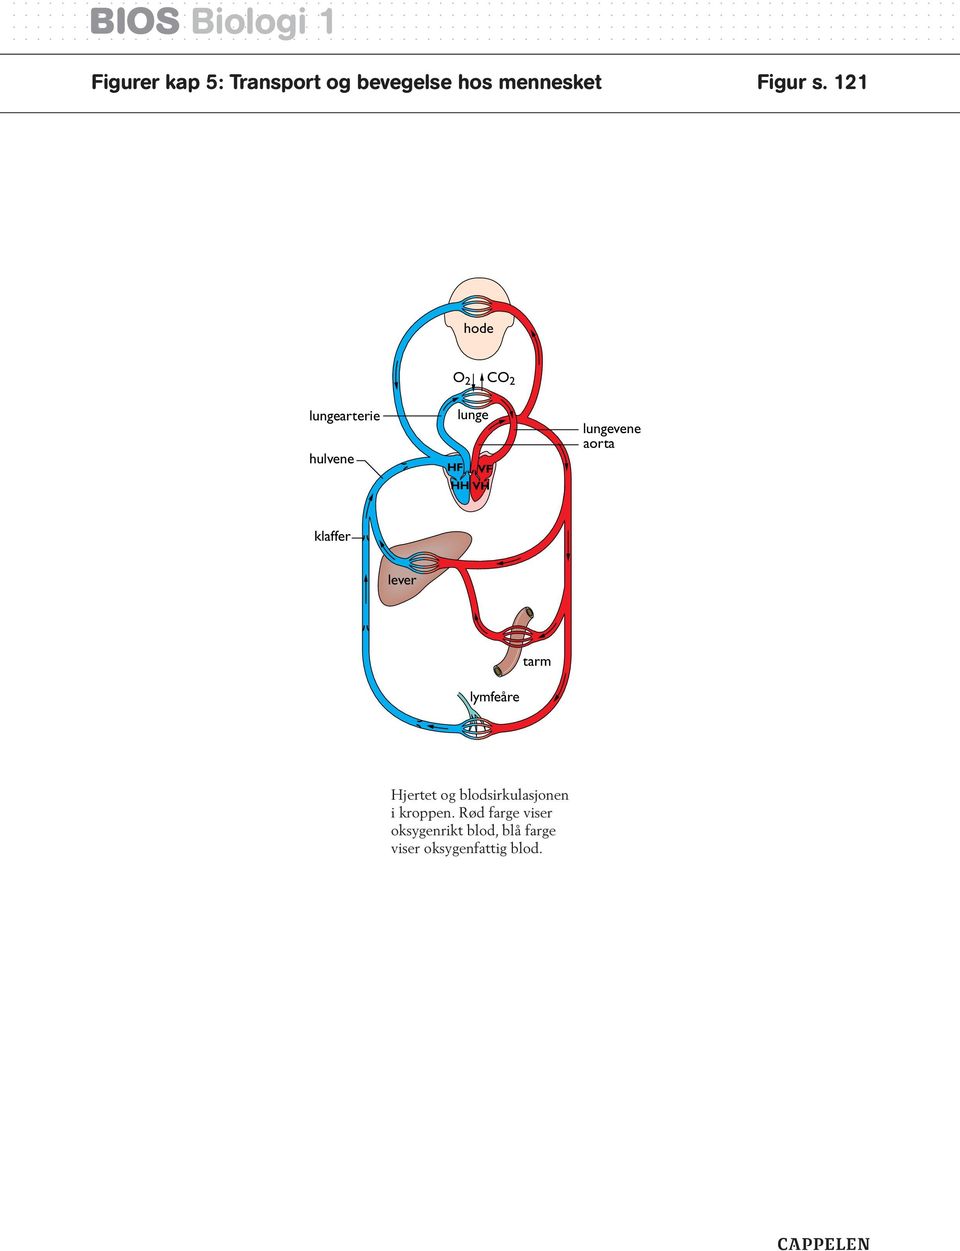 aorta klaffer lever tarm lymfeåre Hjertet og blodsirkulasjonen i